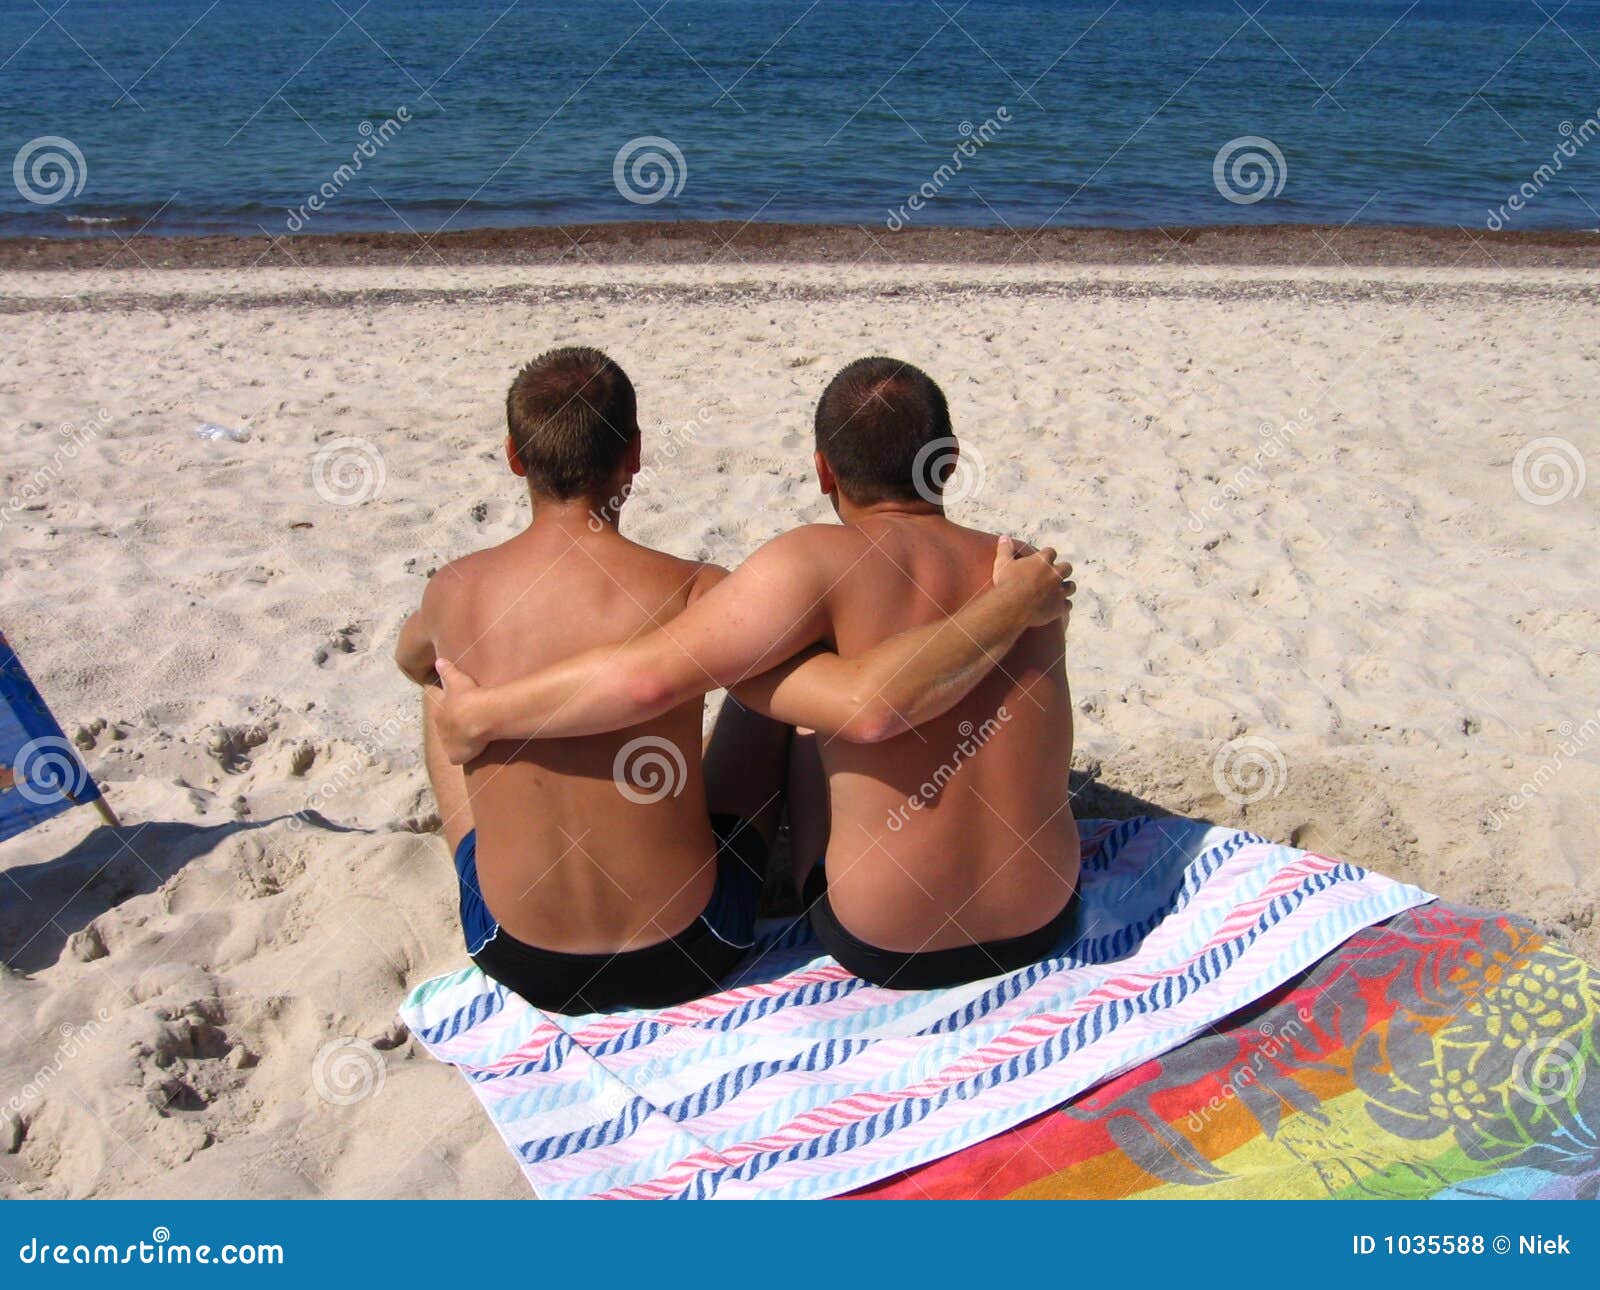 встреча геев на пляже фото 26